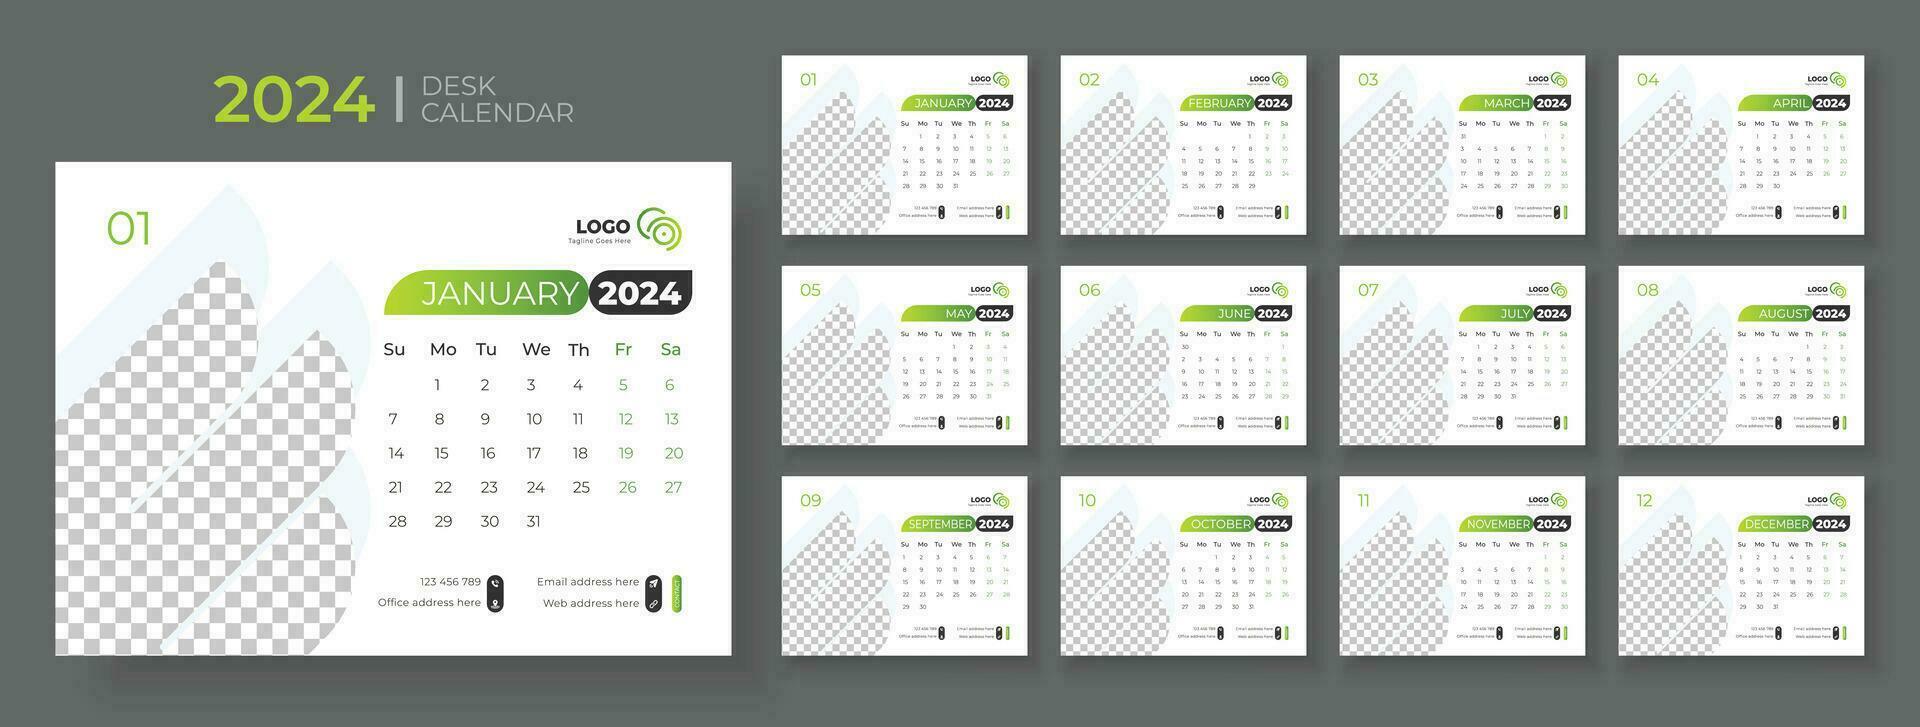 escritorio calendario modelo 2024, semana empieza en domingo, oficina calendario 2024 vector